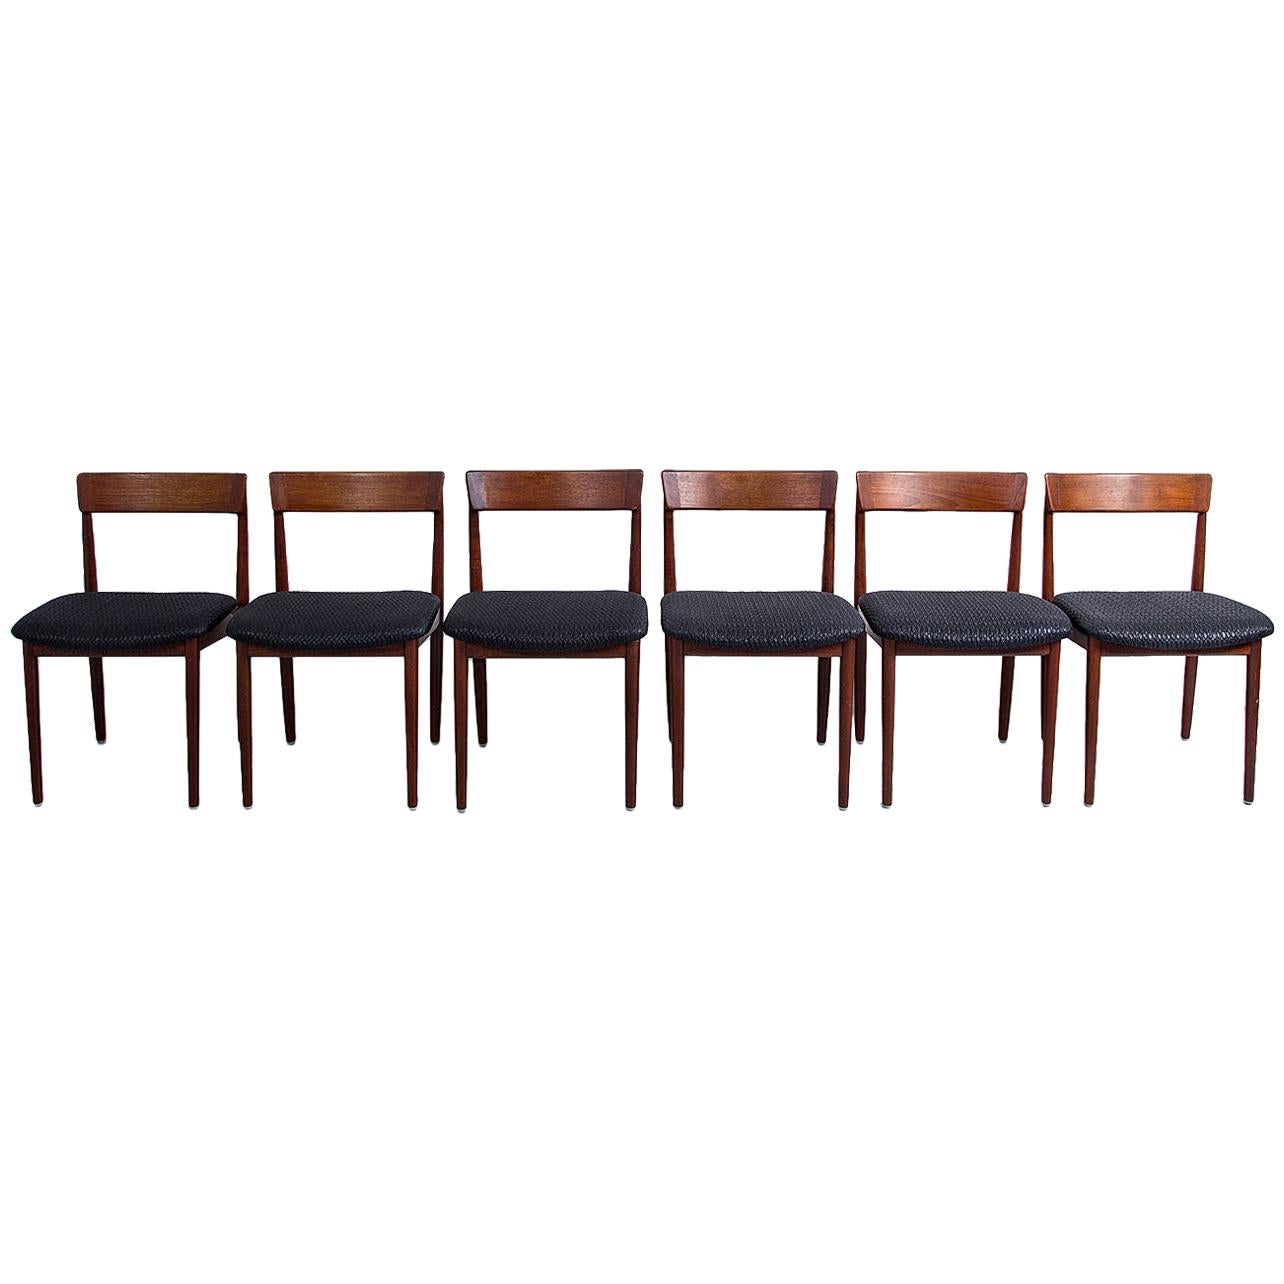 Model 39 Dining Chairs by Henry Rosengren Hansen for Brande Møbelindustri, 1960s